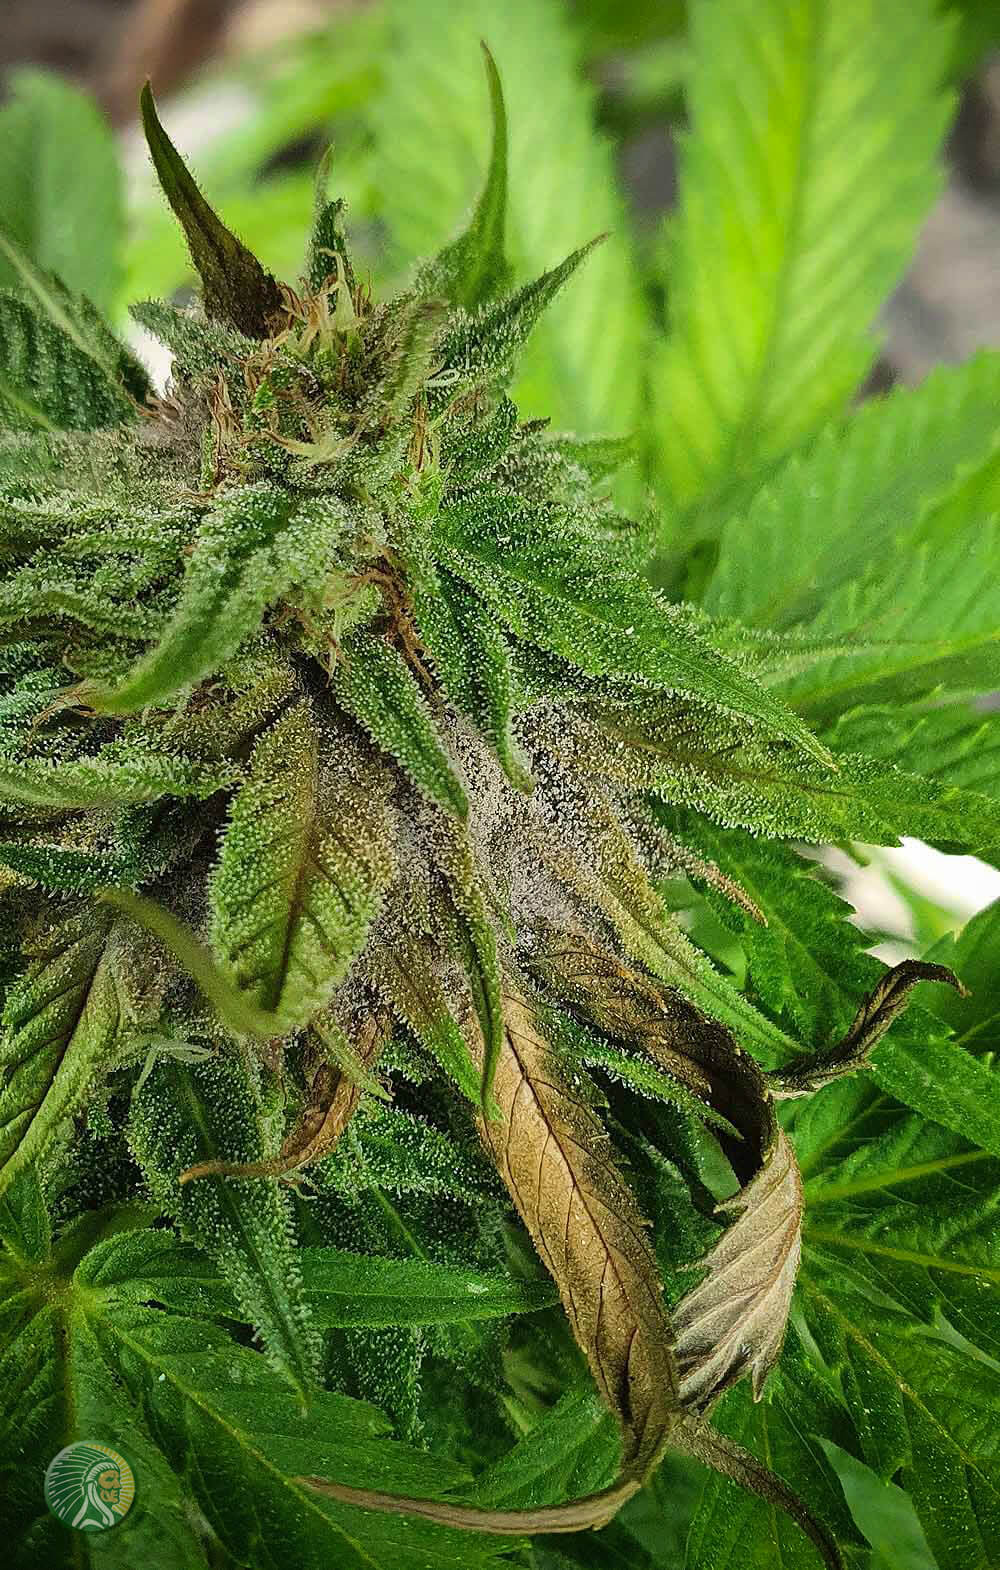 Gray mold on a cannabis flower